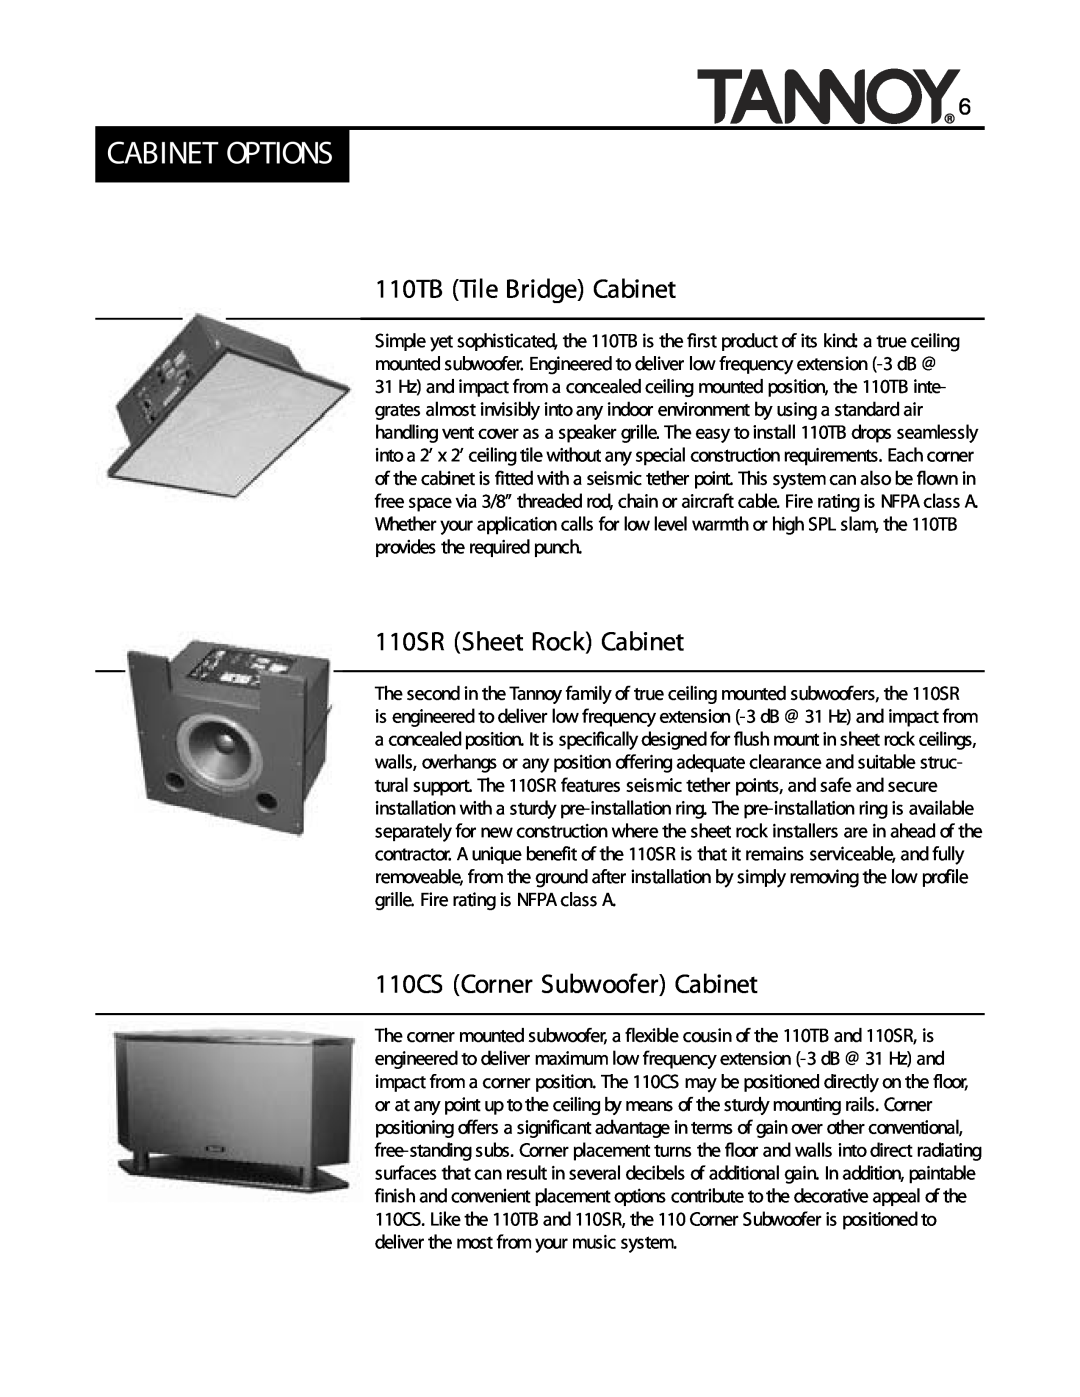 Tannoy SUBWOOFERS Cabinet Options, 110TB Tile Bridge Cabinet, 110SR Sheet Rock Cabinet, 110CS Corner Subwoofer Cabinet 